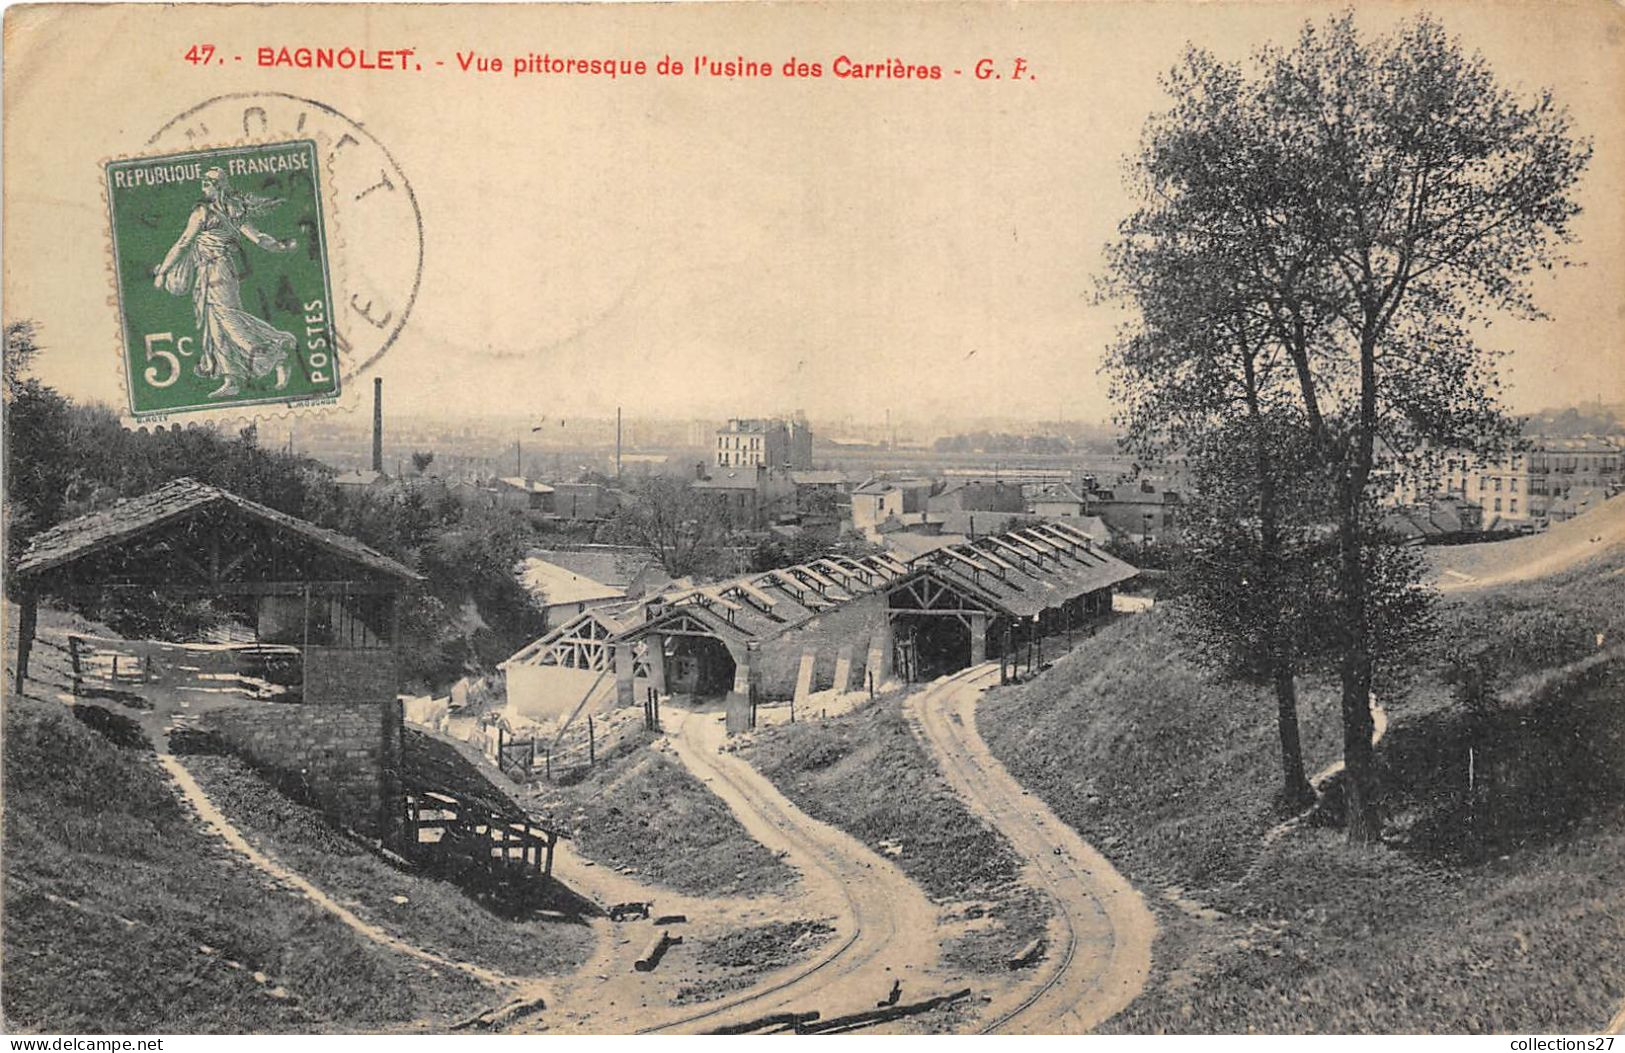 93-BAGNOLET- VUE PITTORESQUE DE L'USINE DES CARRIERES - Bagnolet